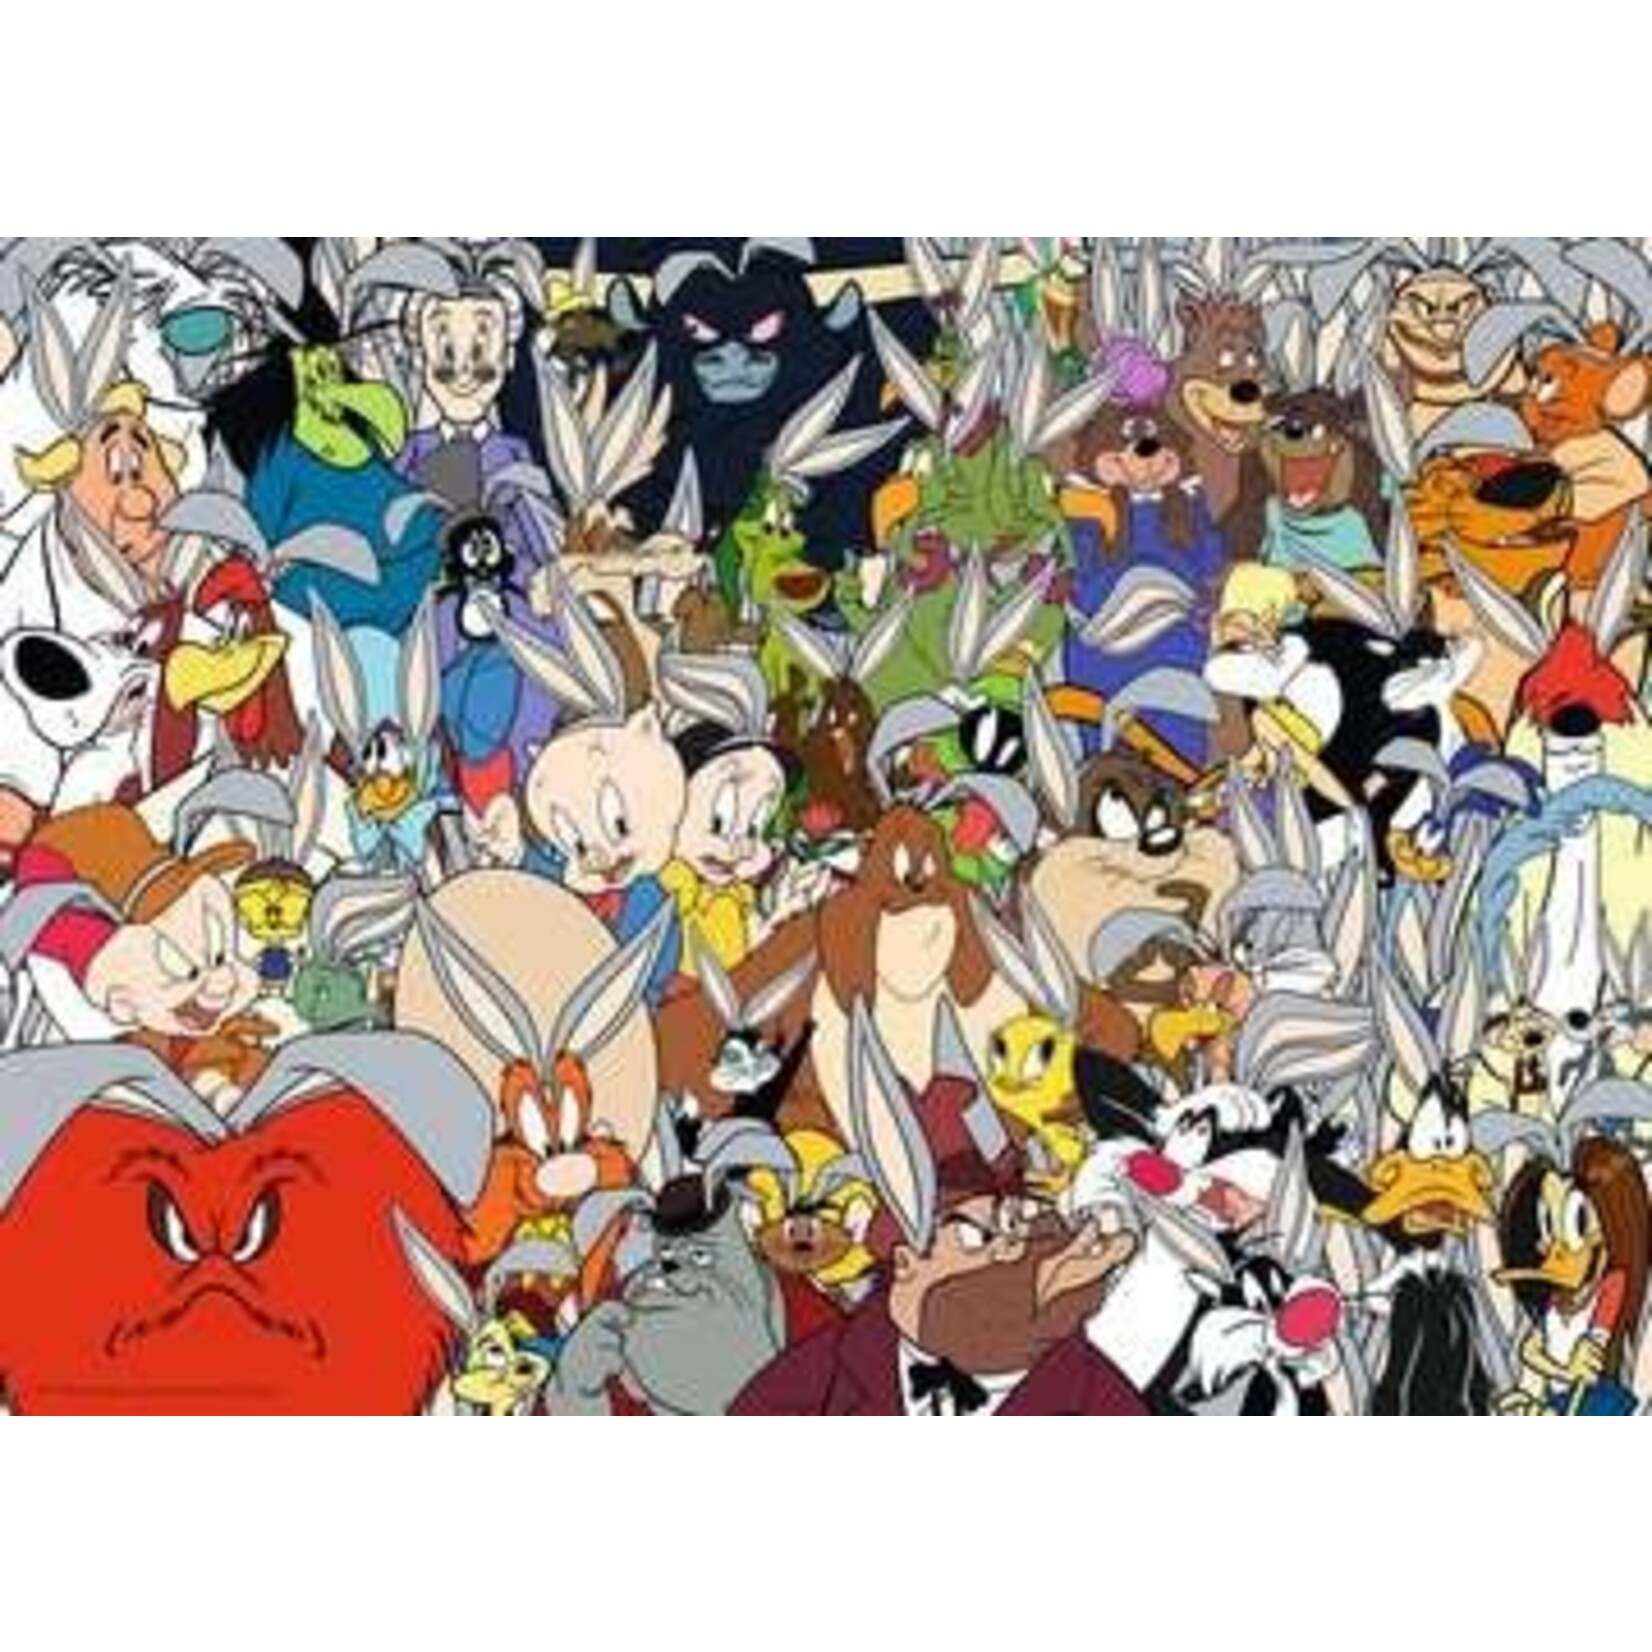 Looney Tunes Challenge 1000 Piece Puzzle